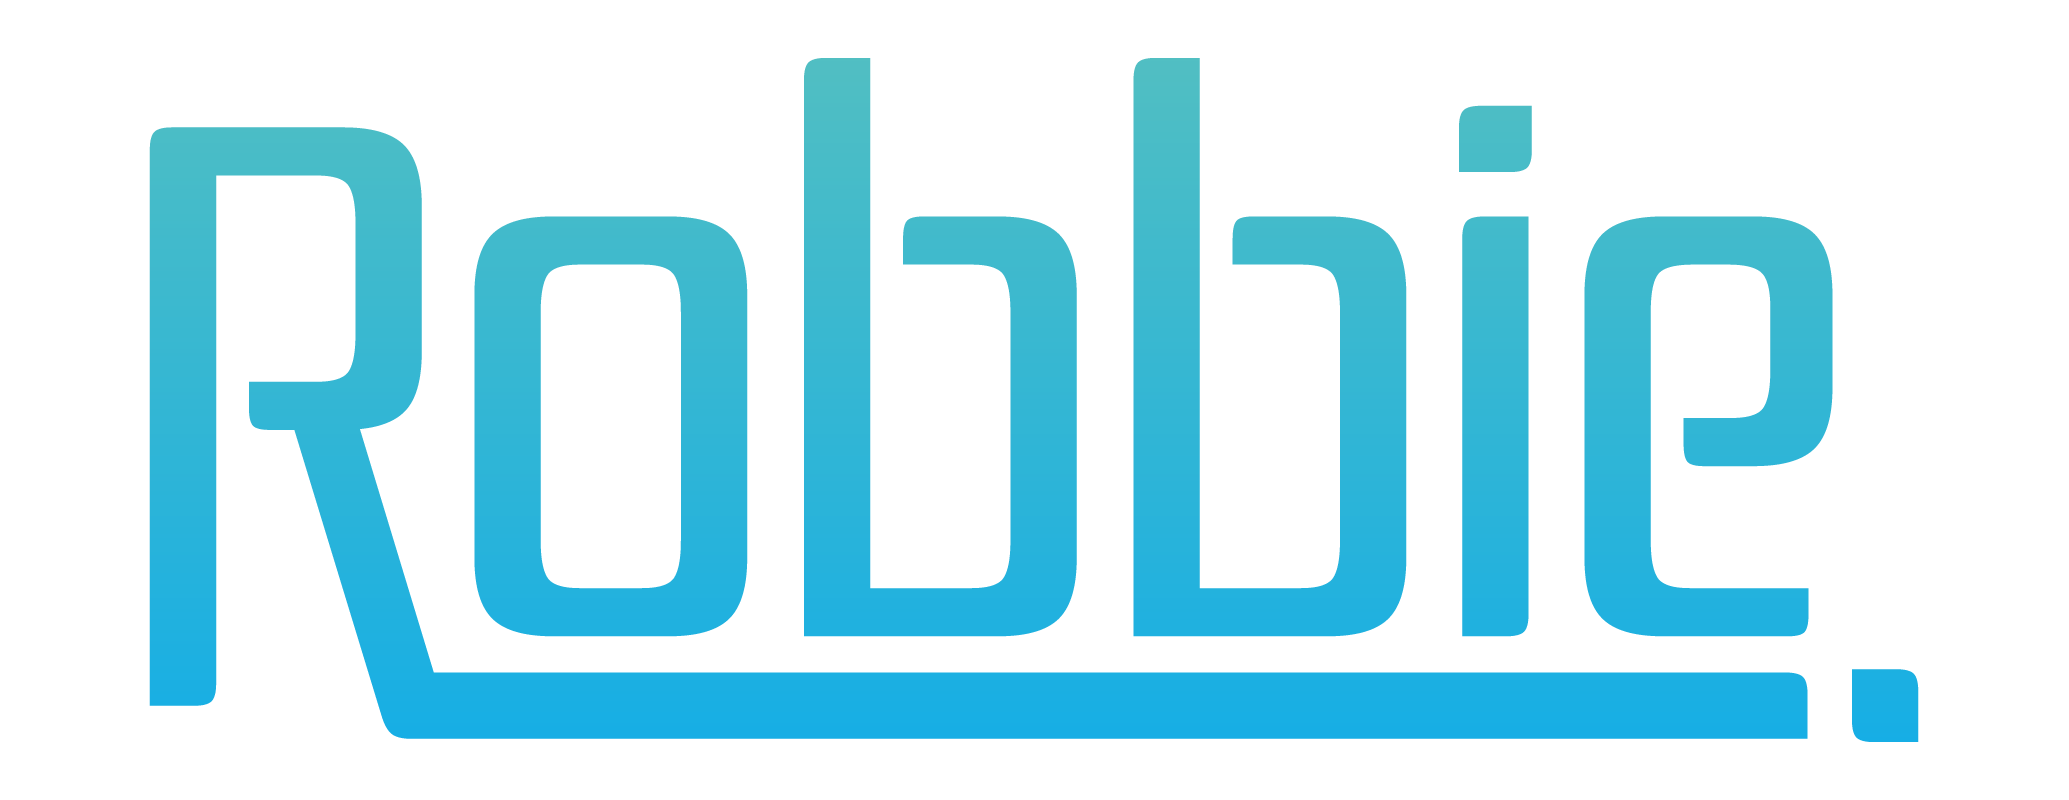 robbie logo